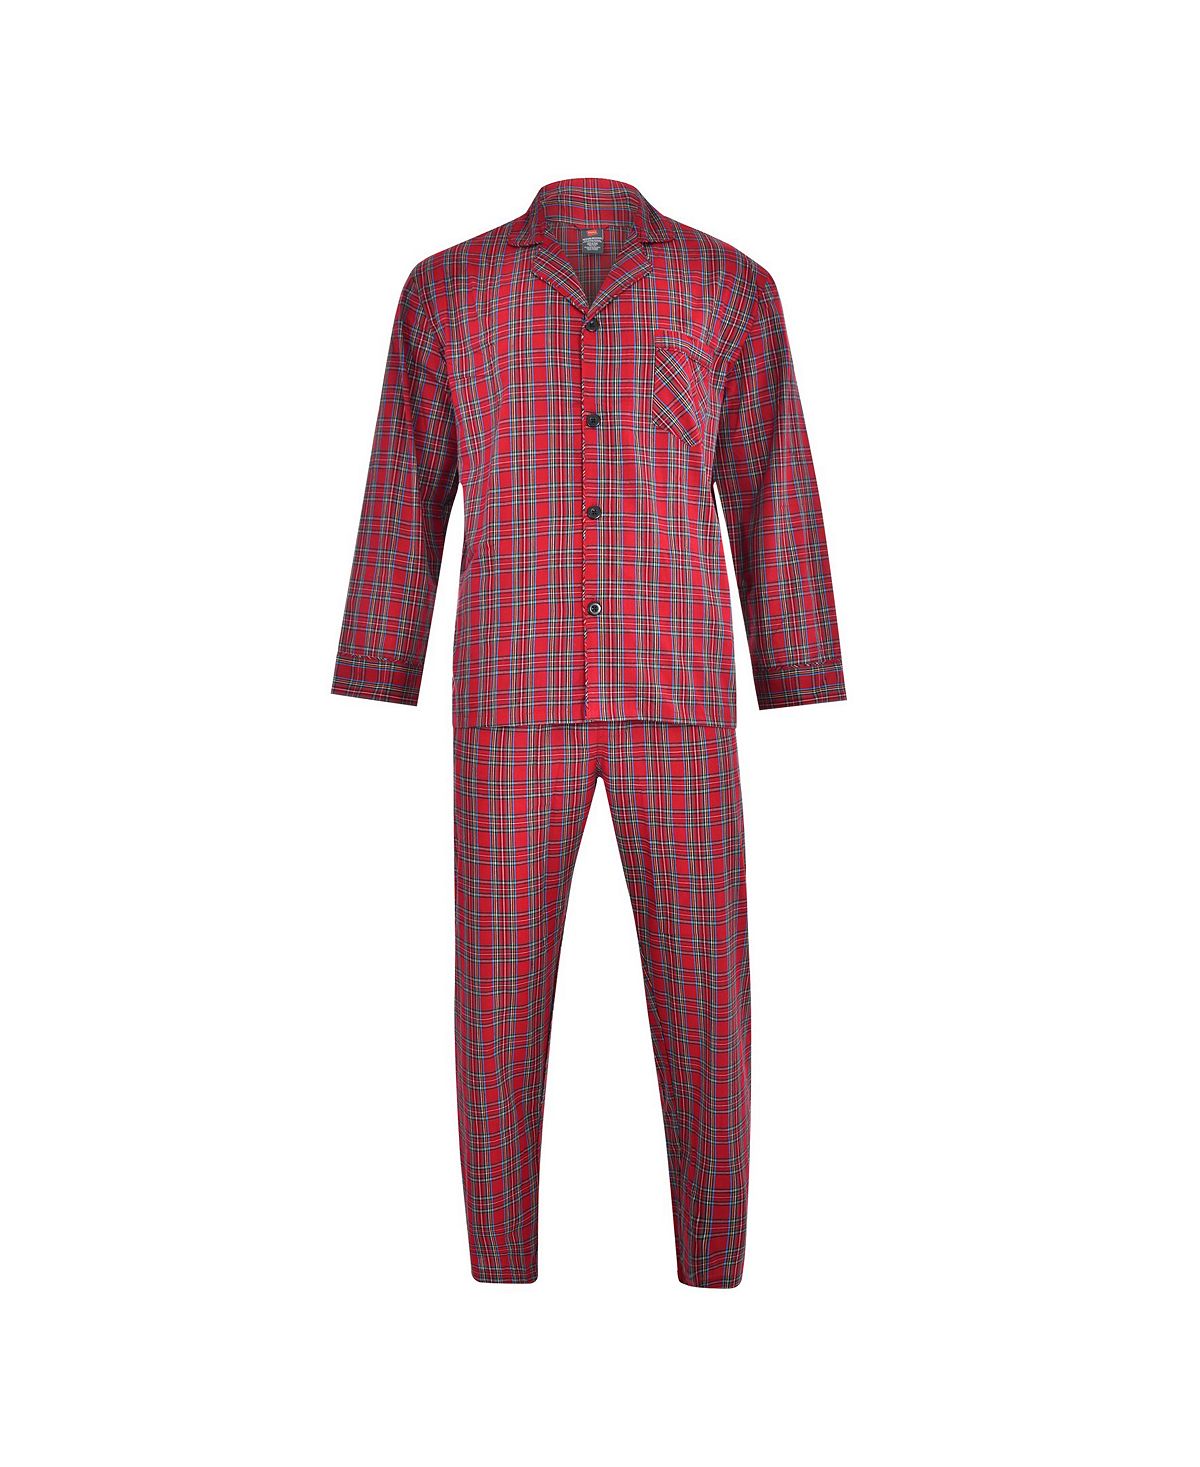 Мужской пижамный комплект из ткани Hanes большого и высокого размера из ткани ПВХ Hanes Platinum